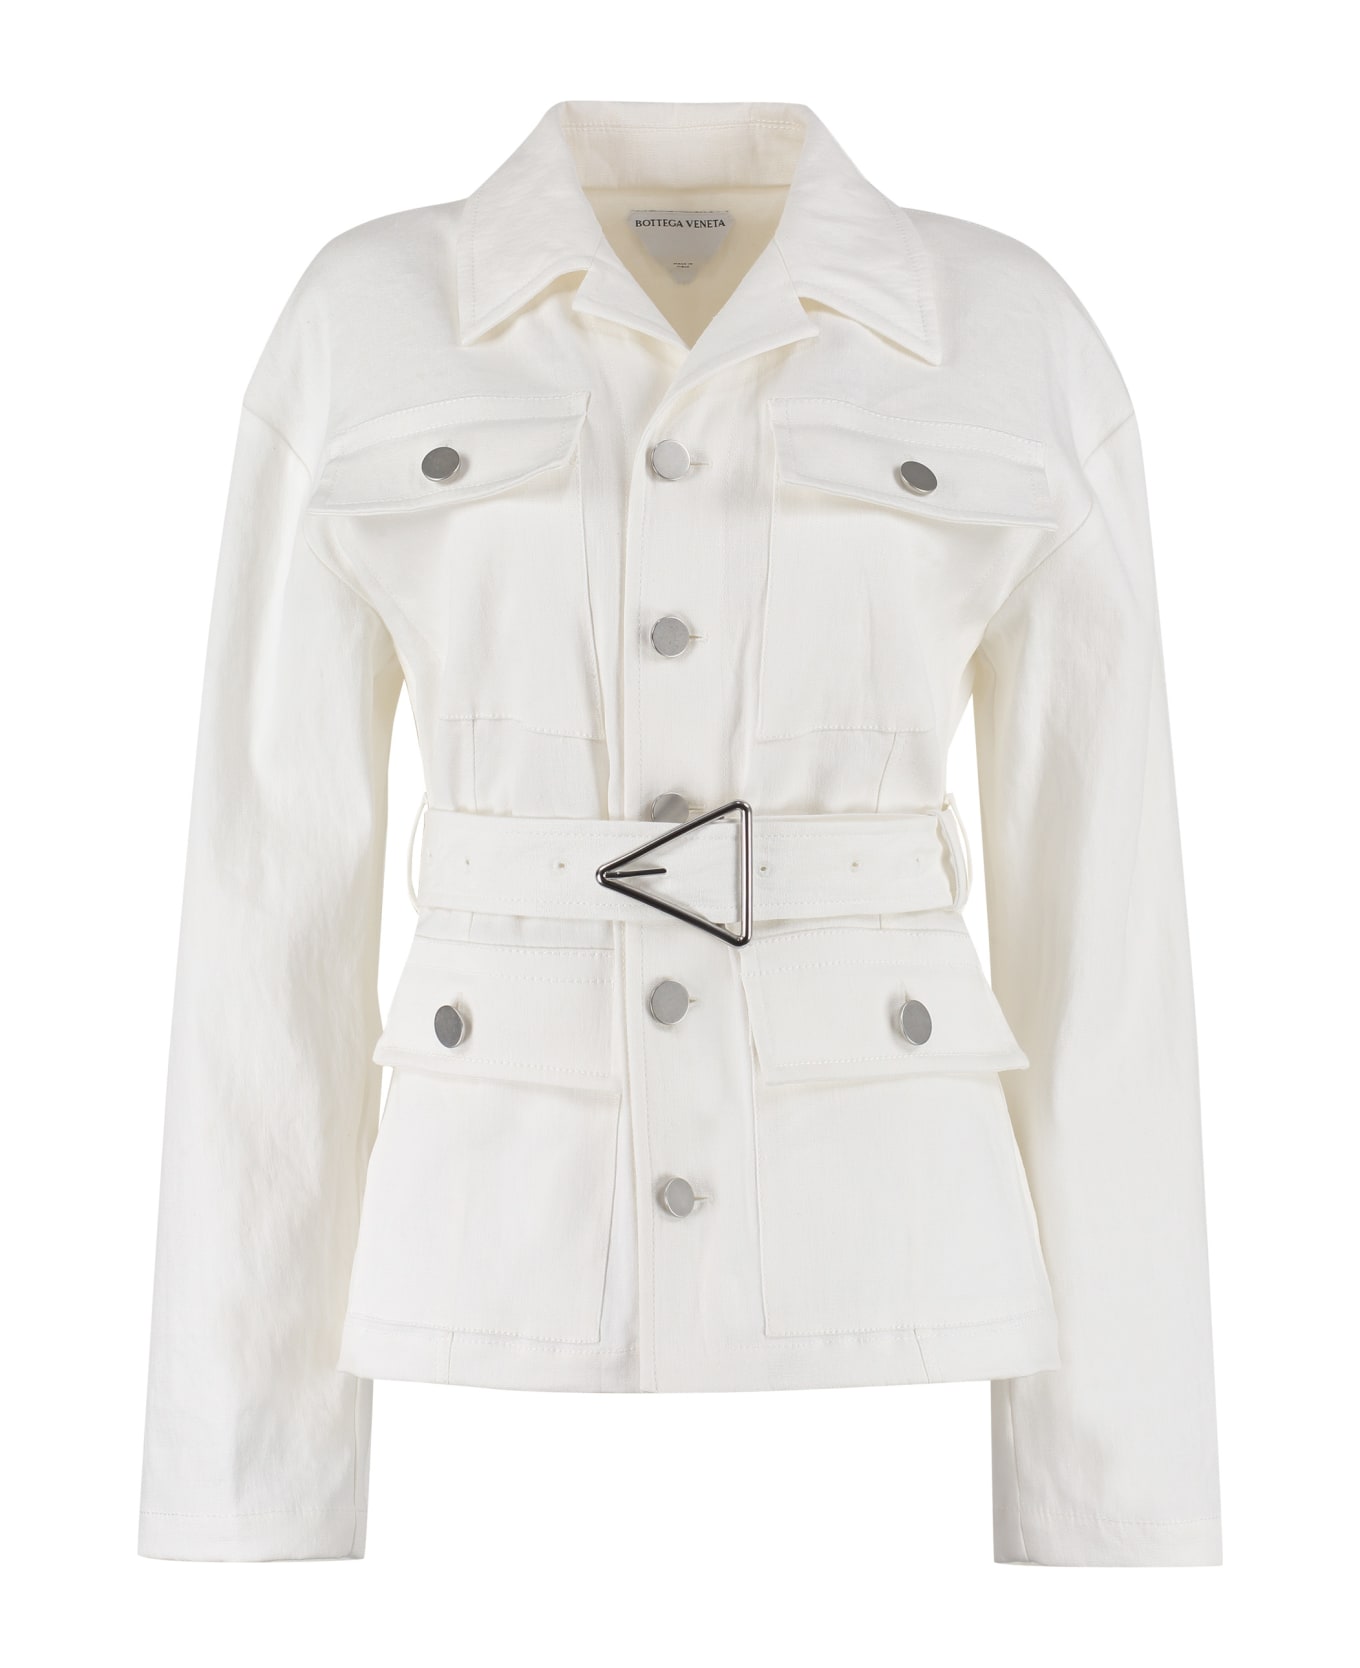 Bottega Veneta Linen Jacket - White ジャケット